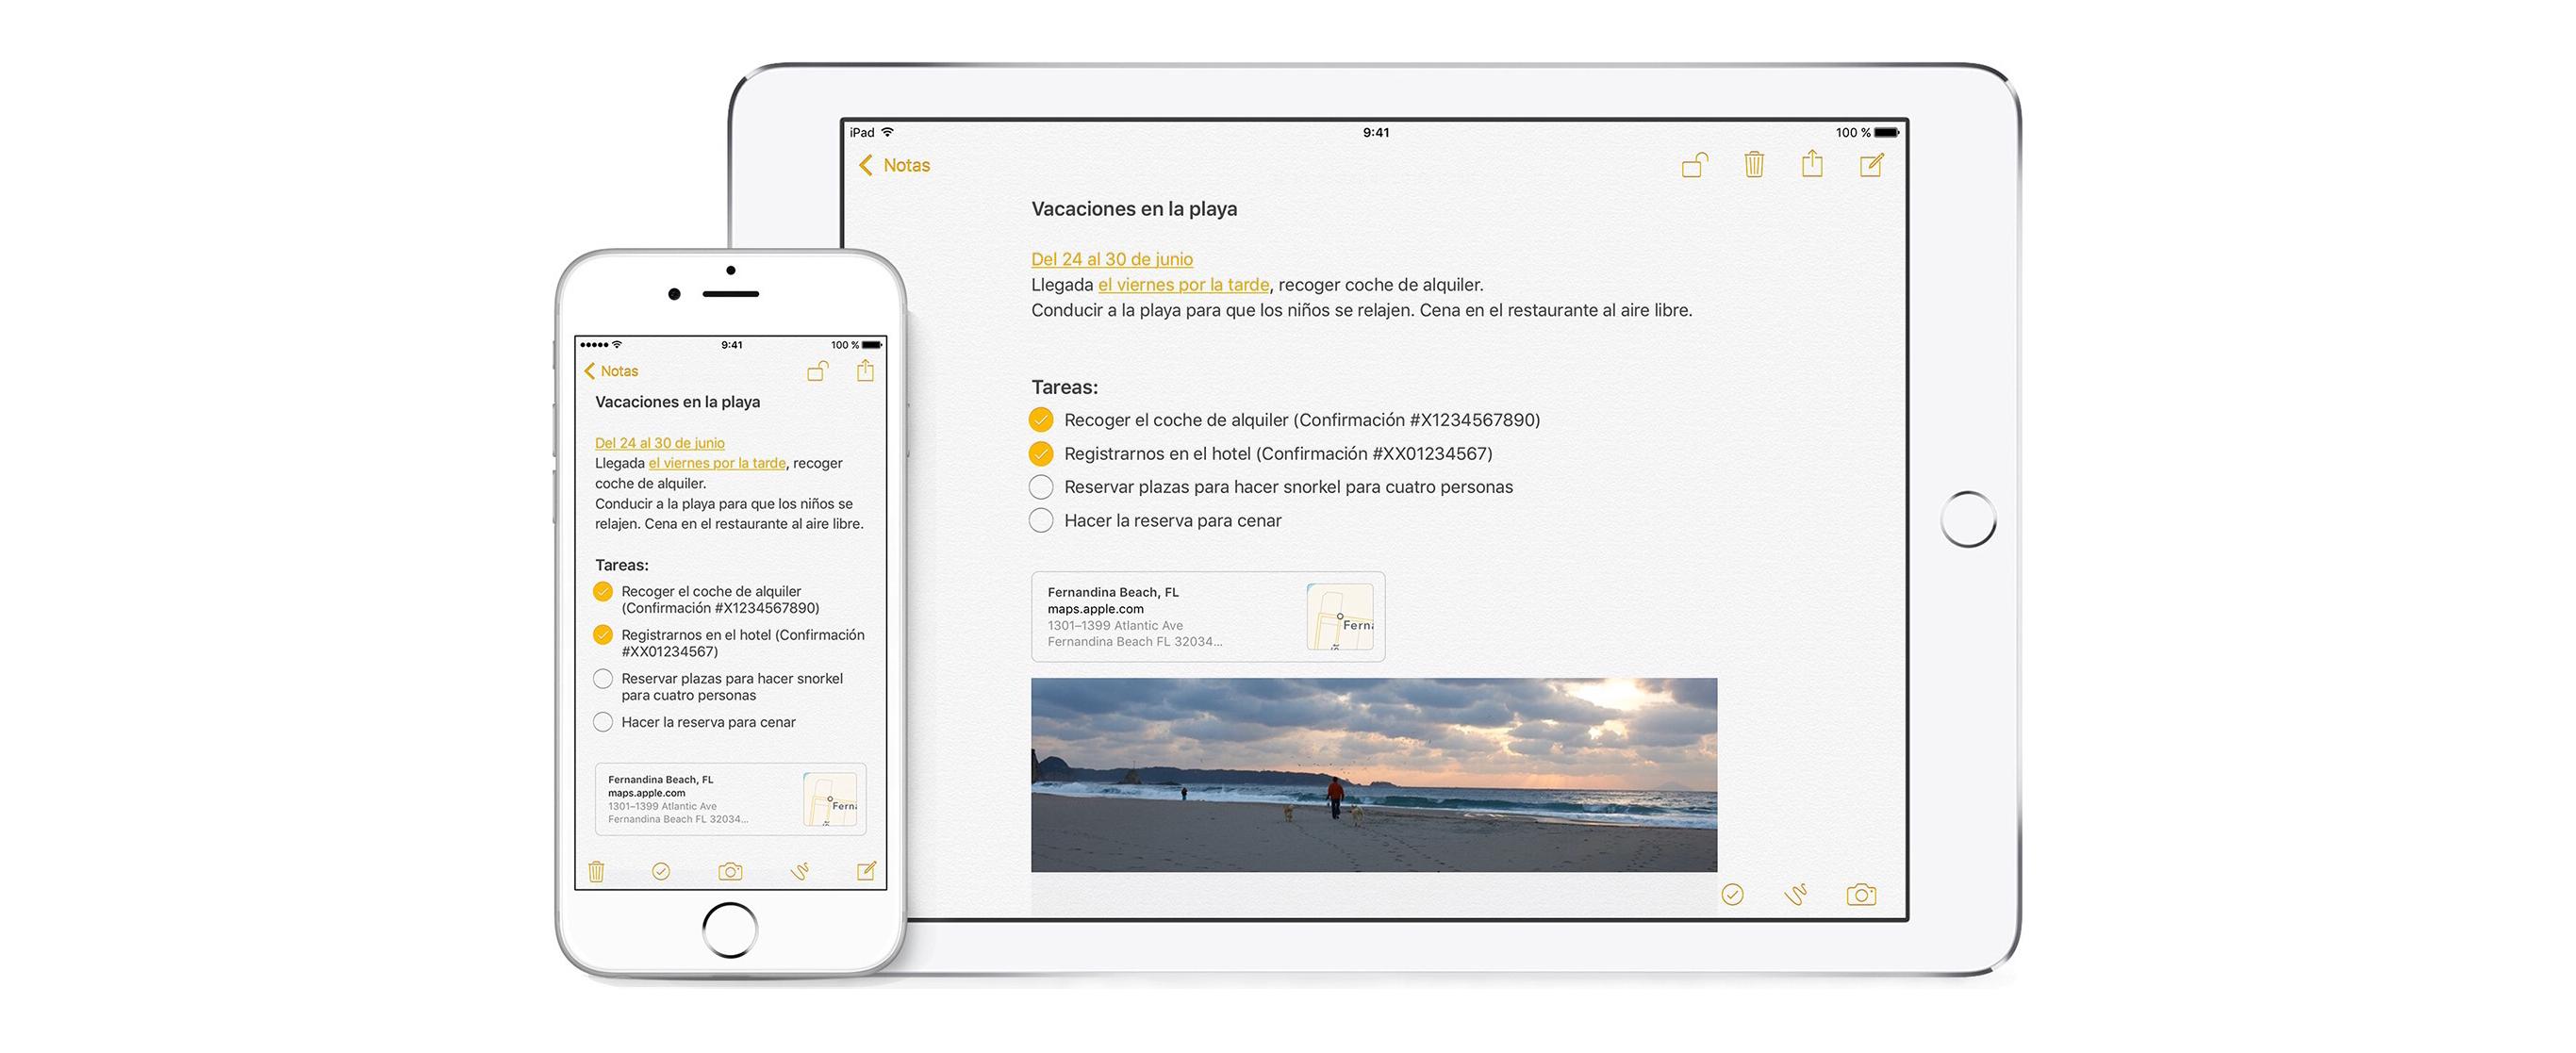 Start je persoonlijke dagboek op iPhone of iPad met deze apps